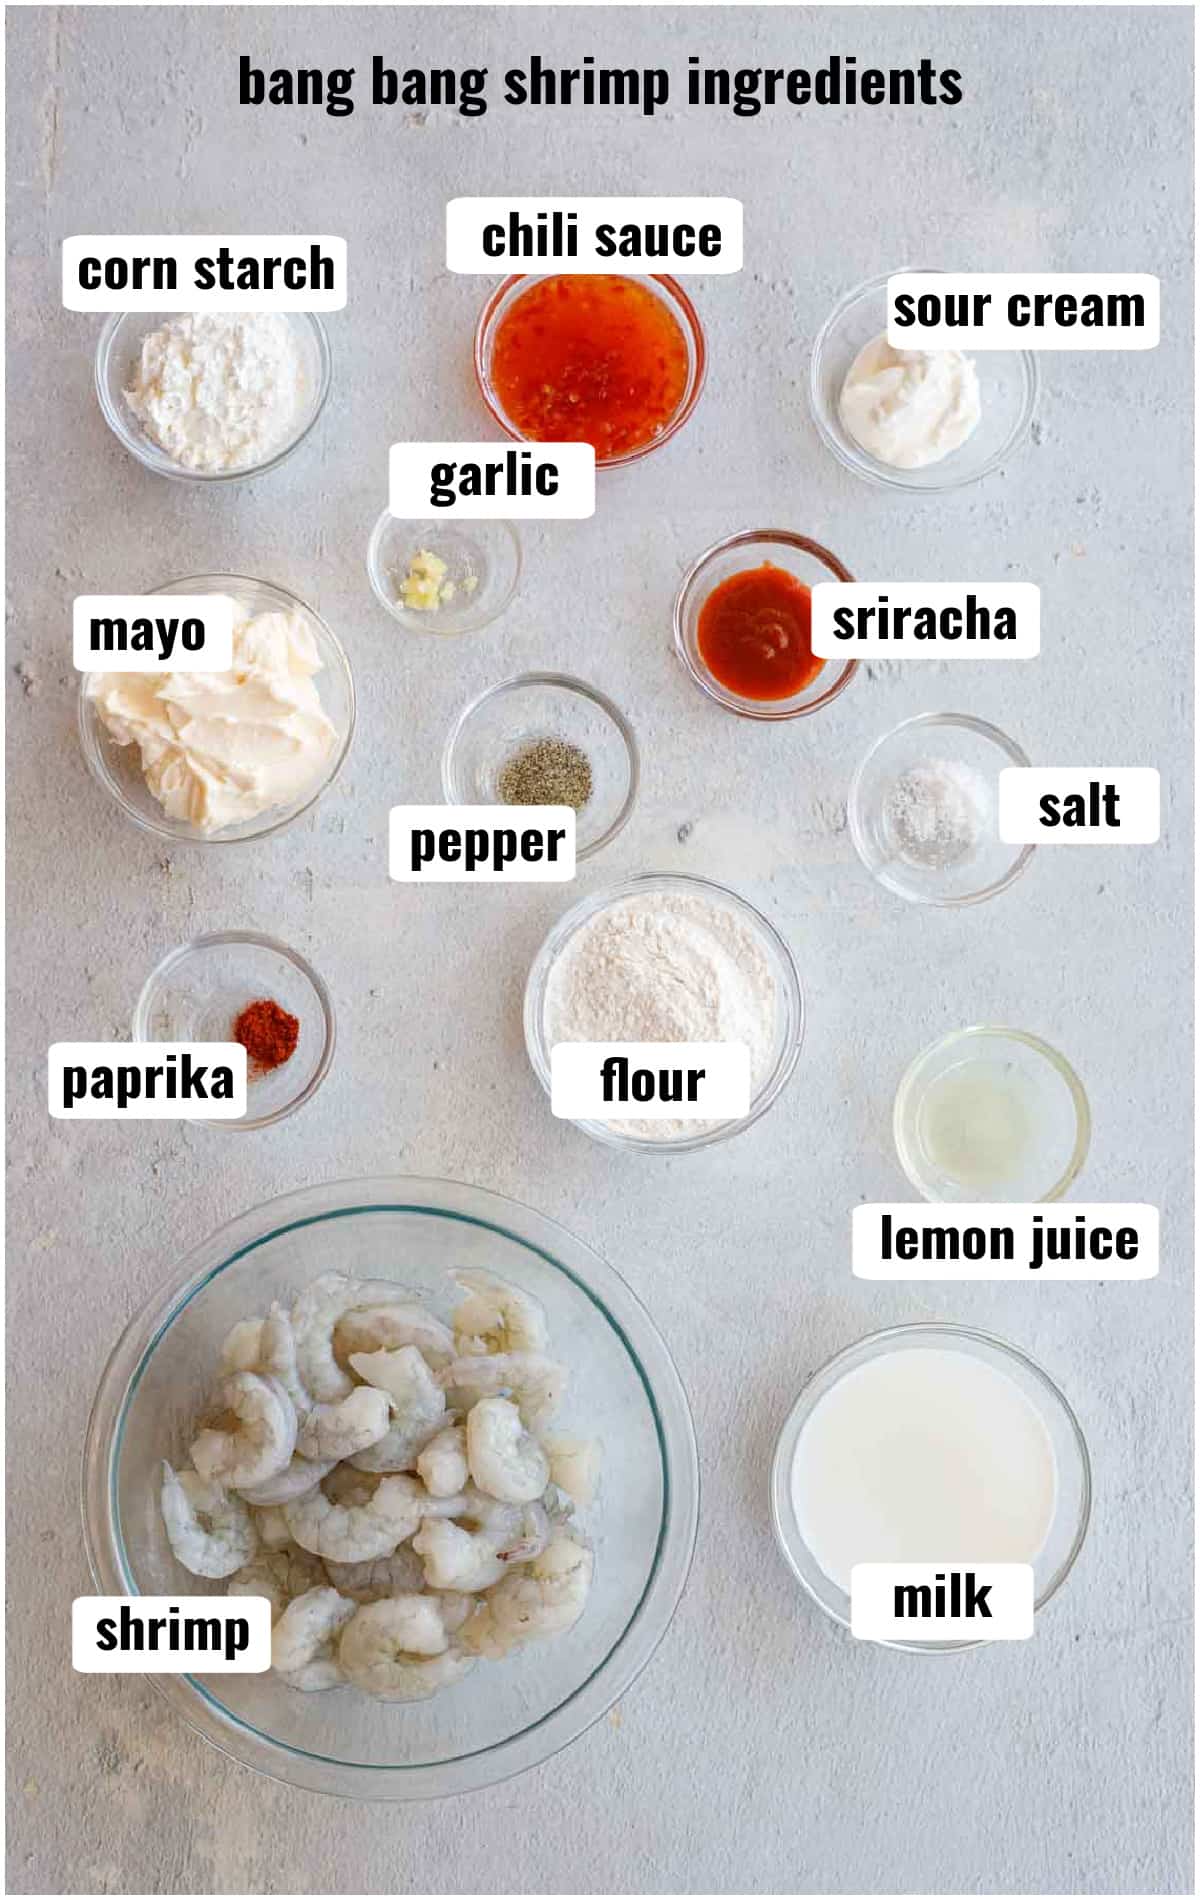 A set up of all the ingredients to make bang bang shrimp.